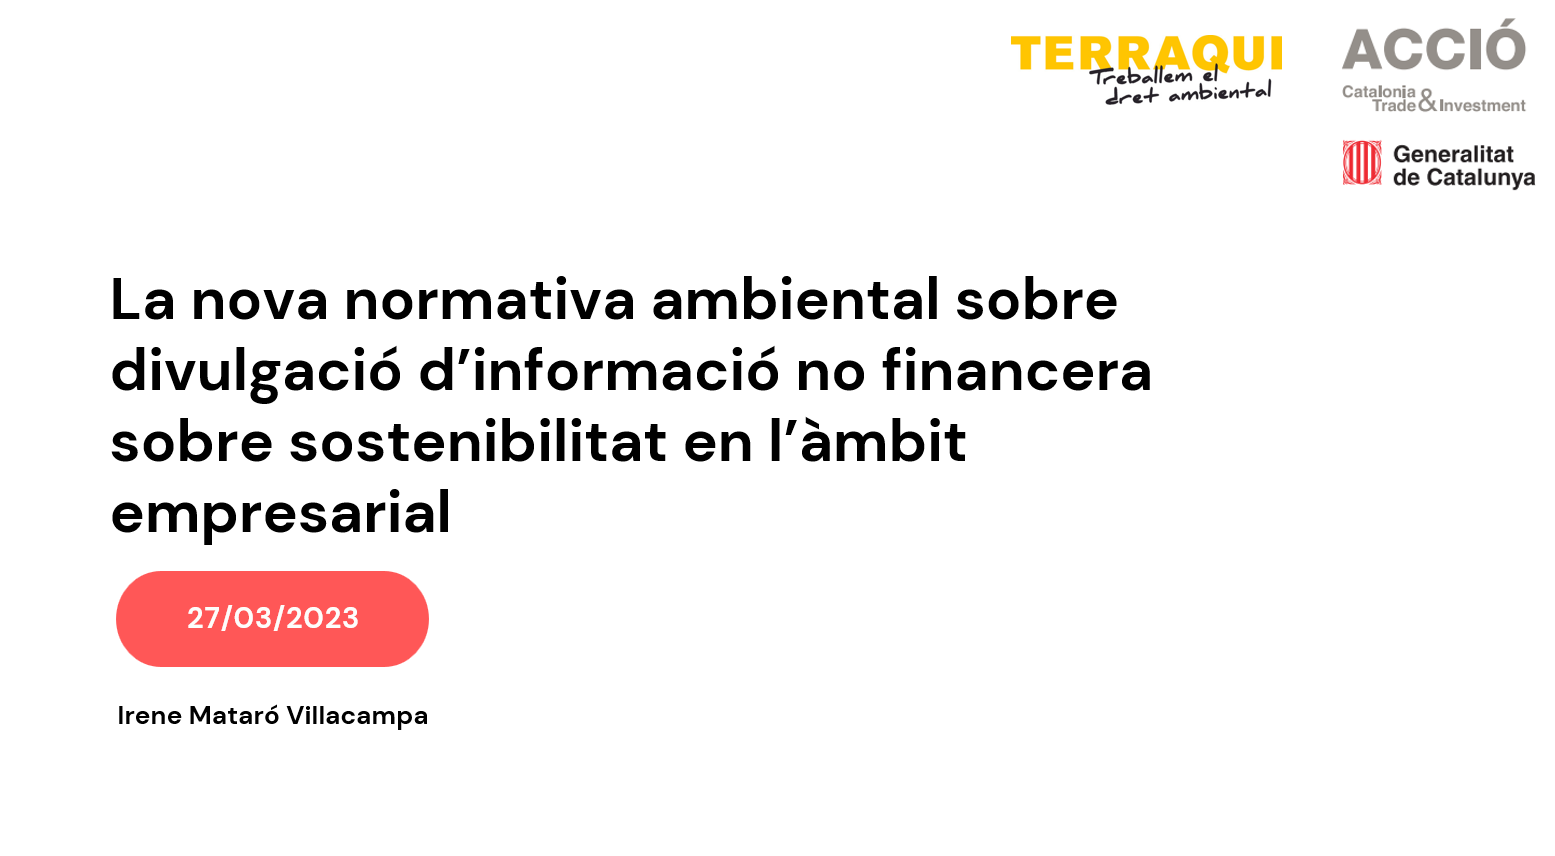 Resumen y grabación de la participación de Terraqui en el webinar sobre divulgación de información ambiental organizado por ACCIÓ